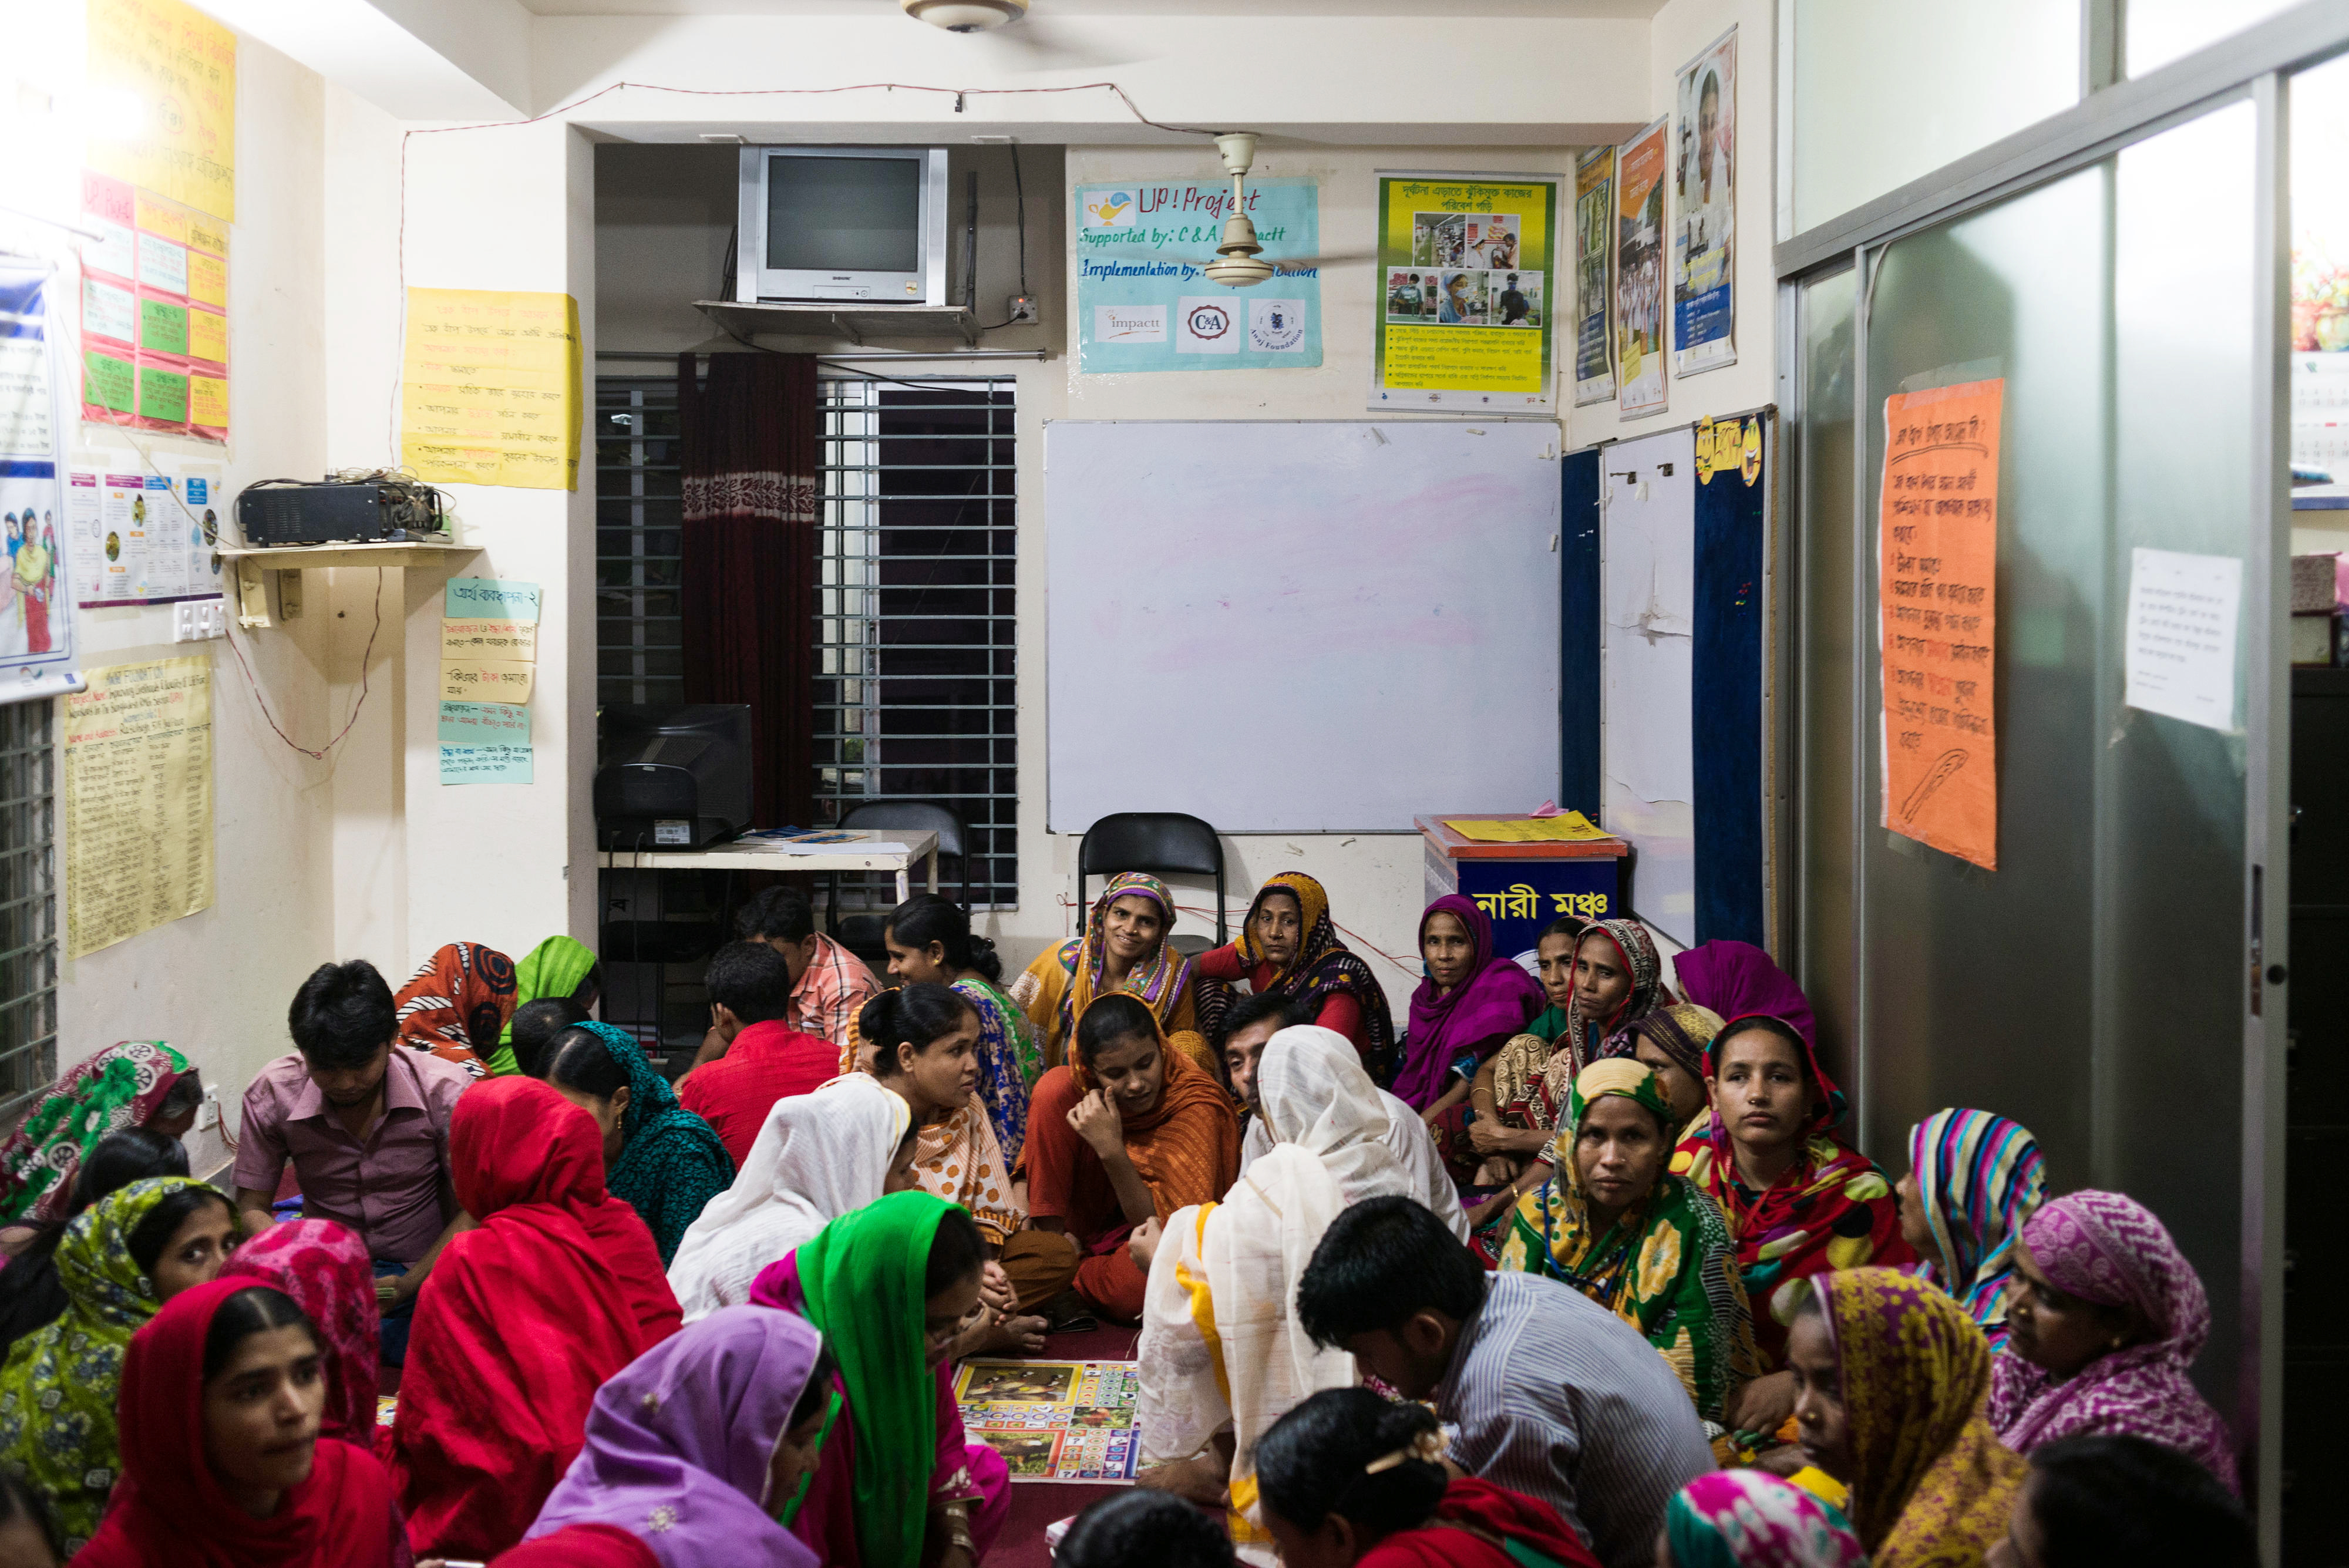 Näherinnen und Näher in einem Frauen-Café in Bangladesch